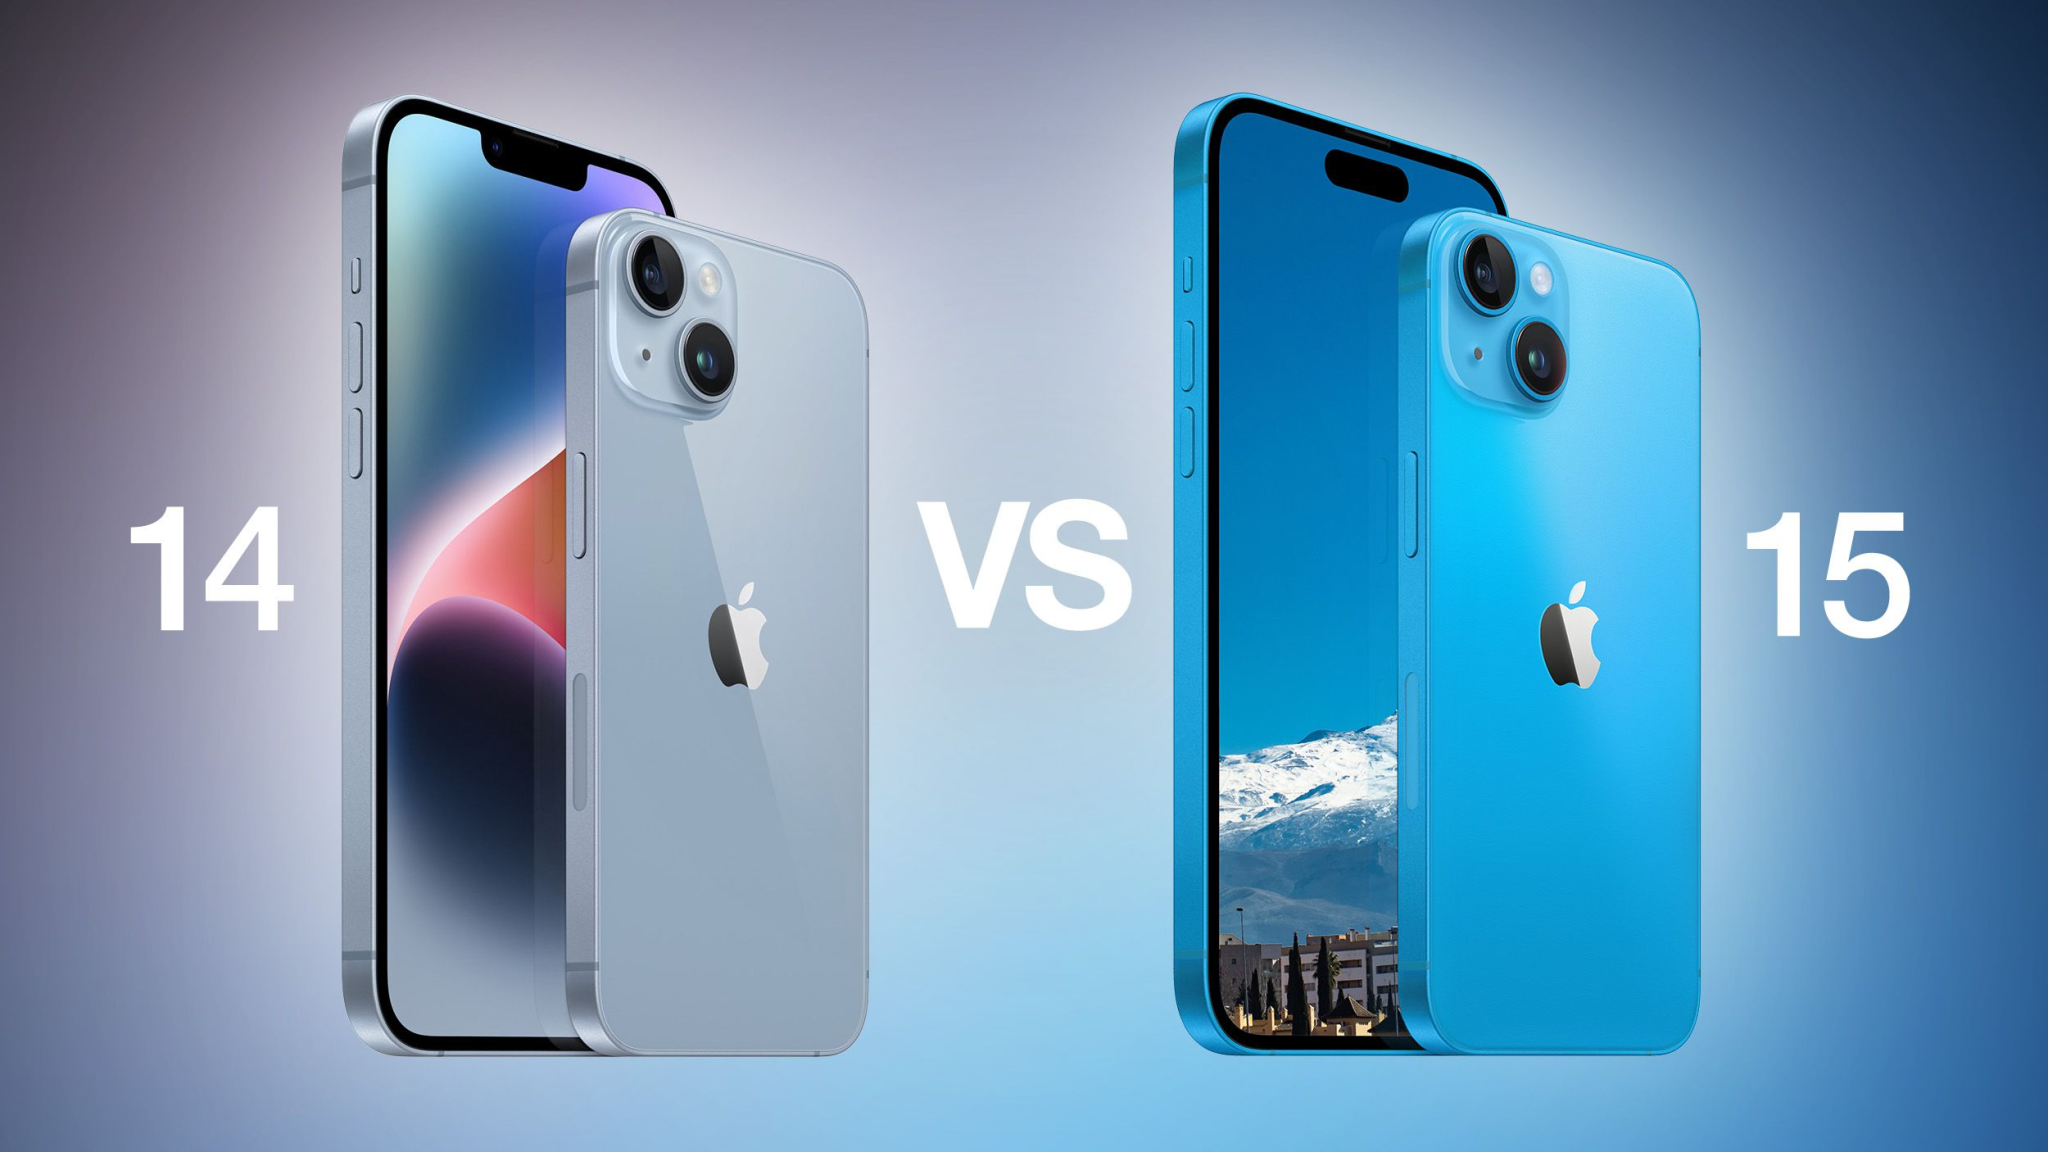 Está pensando em comprar um novo iPhone? Neste artigo, comparamos o iPhone 14 e o iPhone 15 em detalhes, para ajudá-lo a escolher o modelo certo para você.